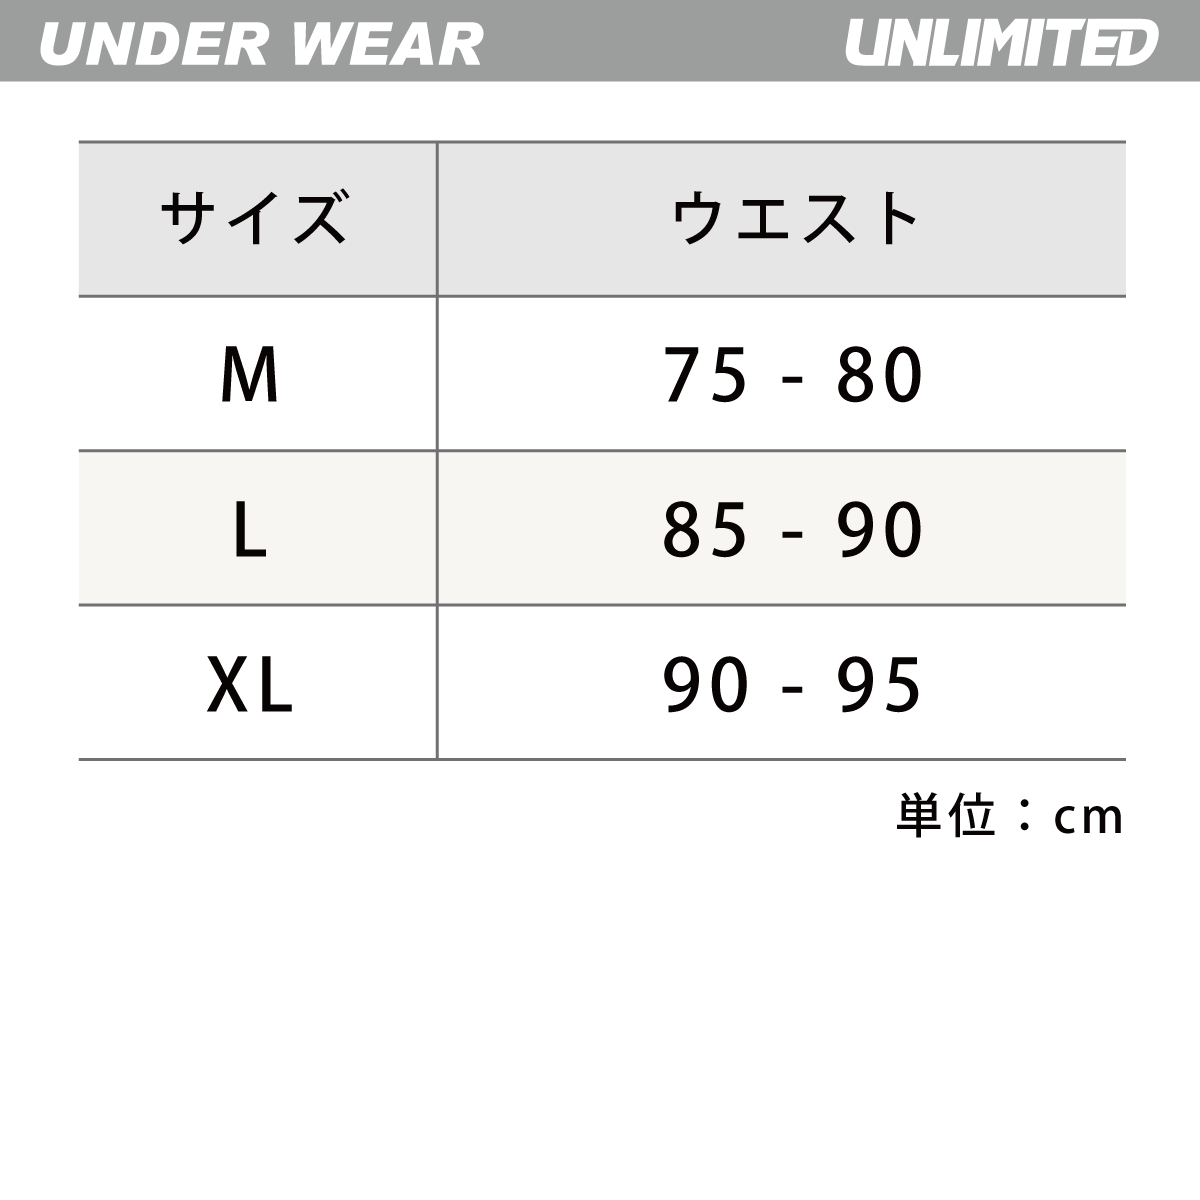  Unlimited мужской леггинсы длинный нижний одежда ULN202BK внутренний выгоревший на солнце участок предотвращение спортивные шорты влажный UNLIMITED